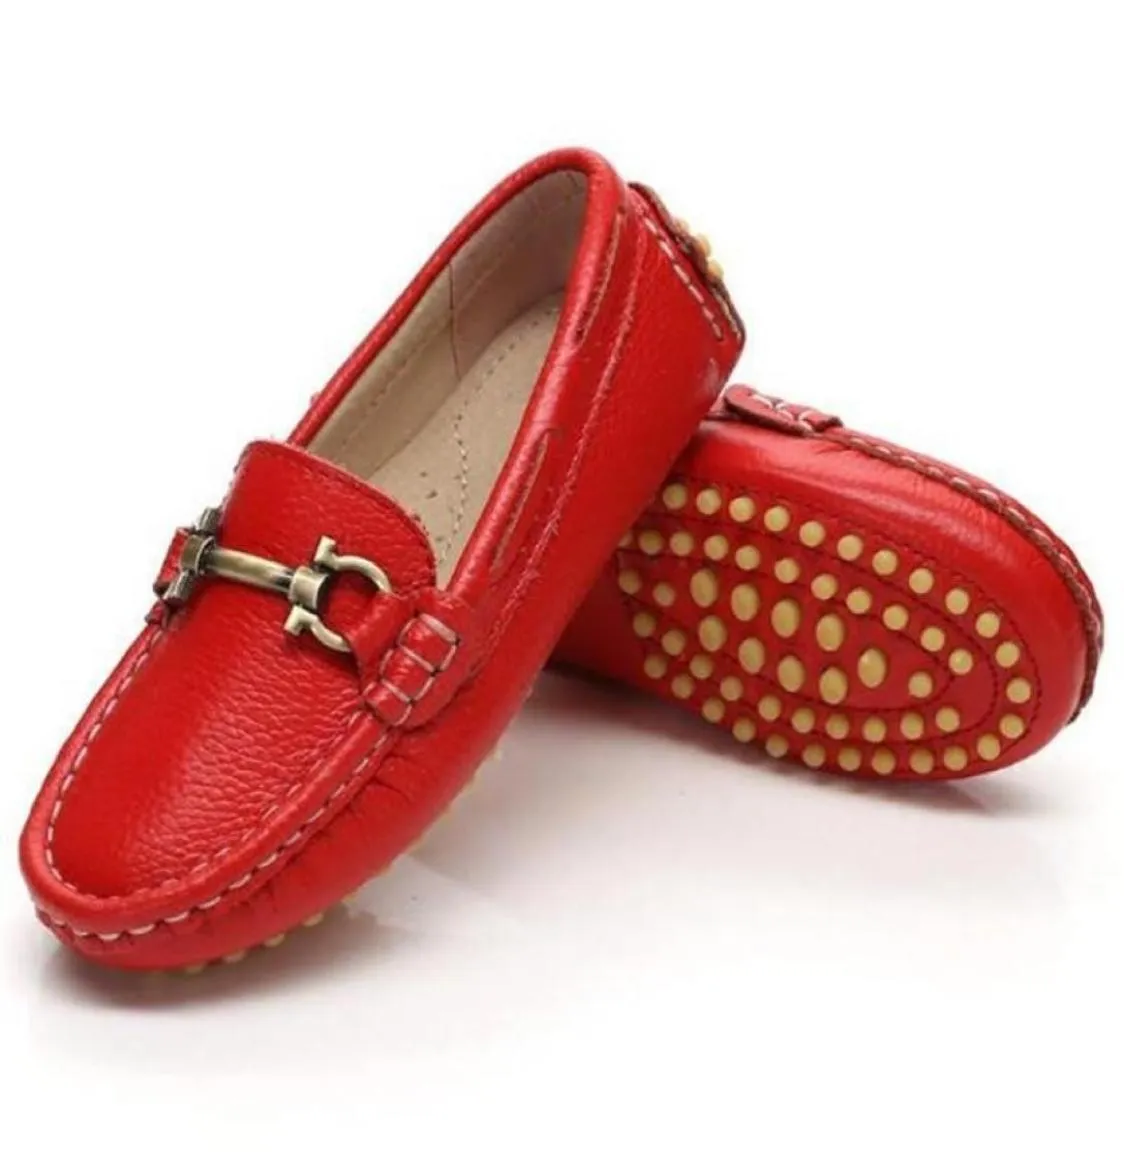 Neue Frühlings-Kleid-Schuhe, bequeme Baby-Kleinkind-Casual-Slipper aus echtem Leder, für Jungen und Mädchen, flache Schuhe 5996070